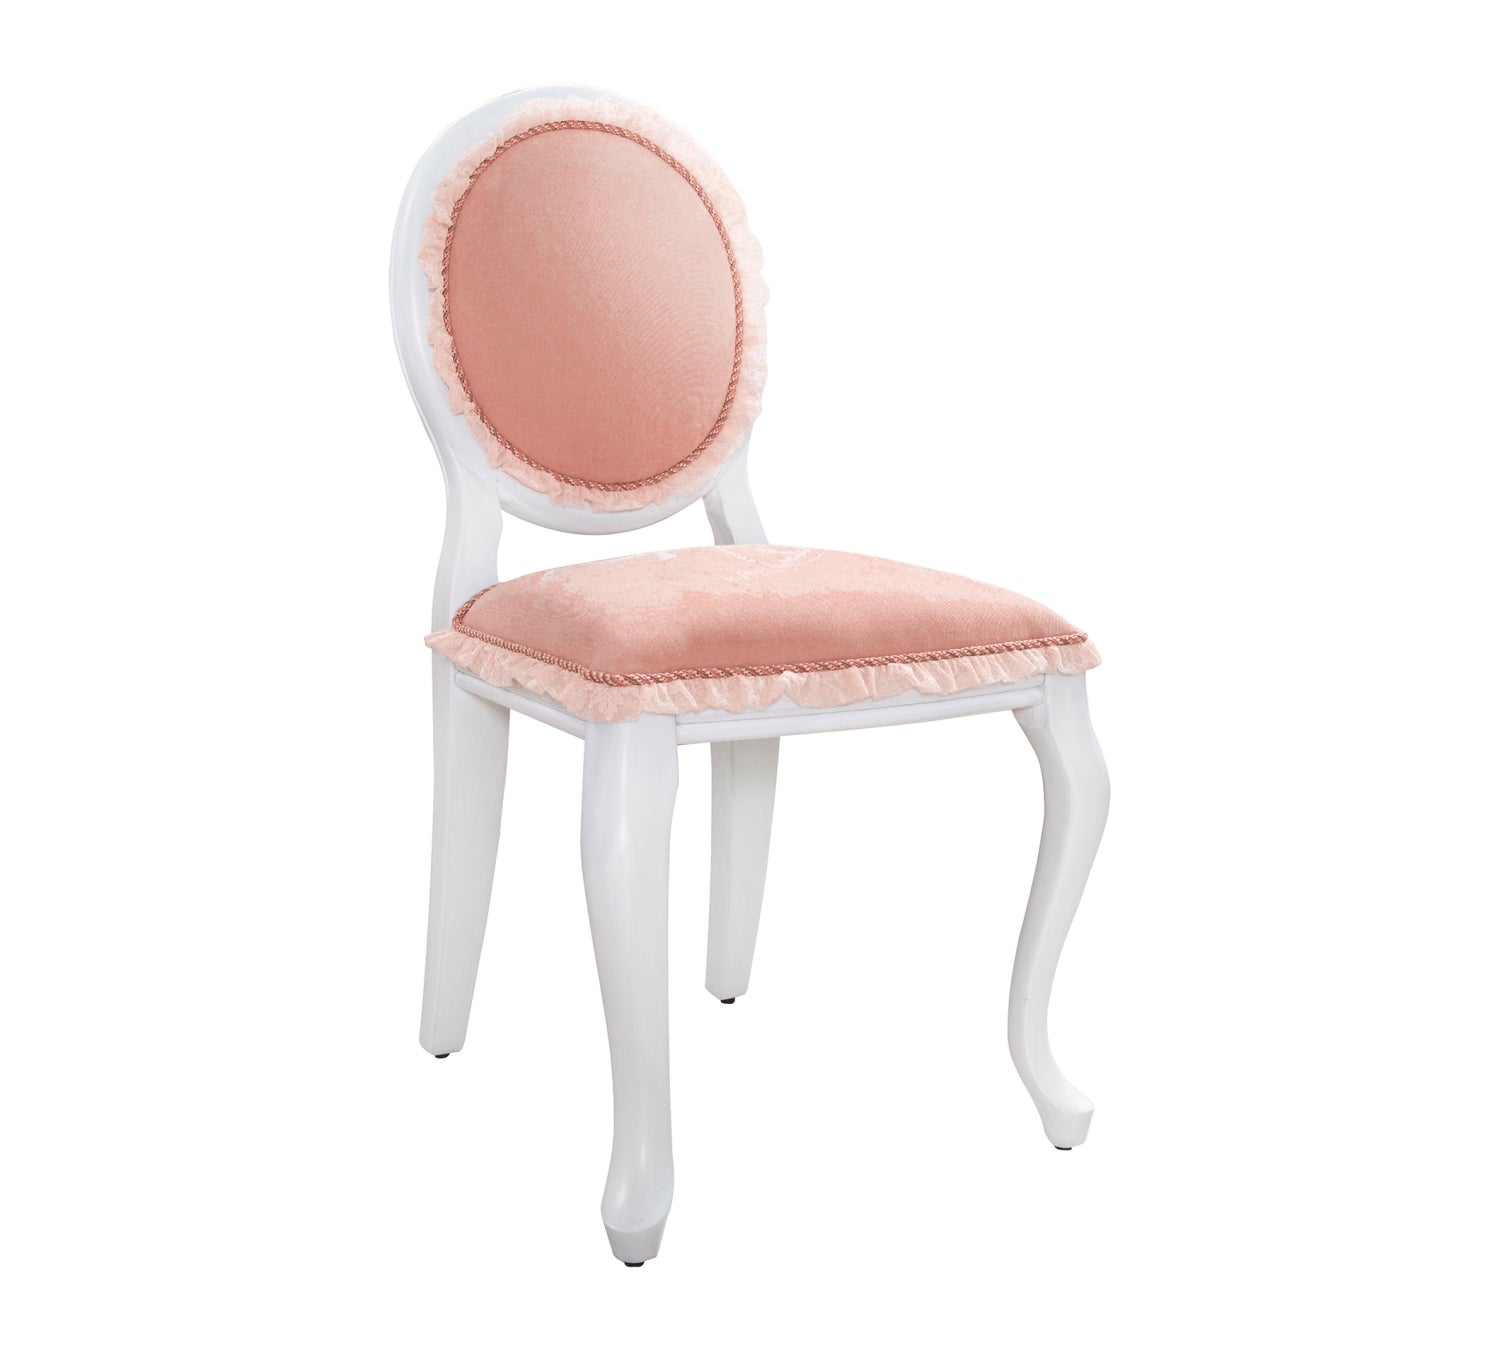 Cilek Dream Chair